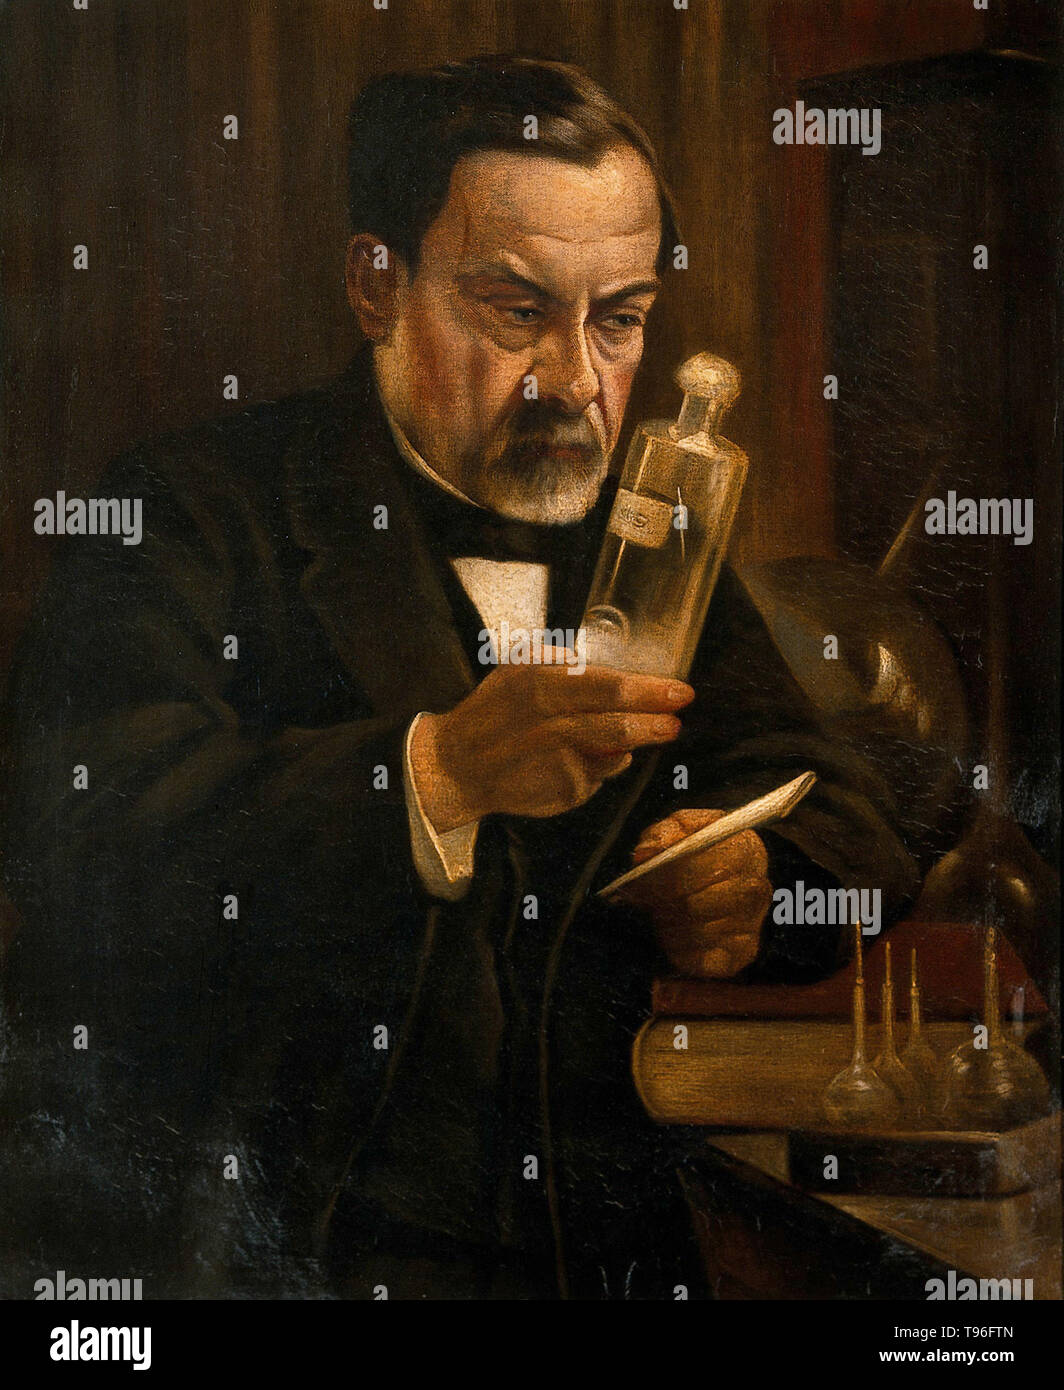 Louis Pasteur (27 décembre 1822 - 28 septembre 1895) était un chimiste français, et qui a fondé le bactériologiste La science de la microbiologie. Le pâturage a découvert qu'il pouvait être causée par une bactérie transmise de personne à personne (la théorie des germes de maladies). Il a également mis au point des vaccins contre la rage et de l'anthrax. Pasteur a également constaté que le chauffage des aliments et boissons à la légère pouvait les préserver de la dégradation. Ce processus de pasteurisation est maintenant largement utilisé dans l'industrie alimentaire. Banque D'Images